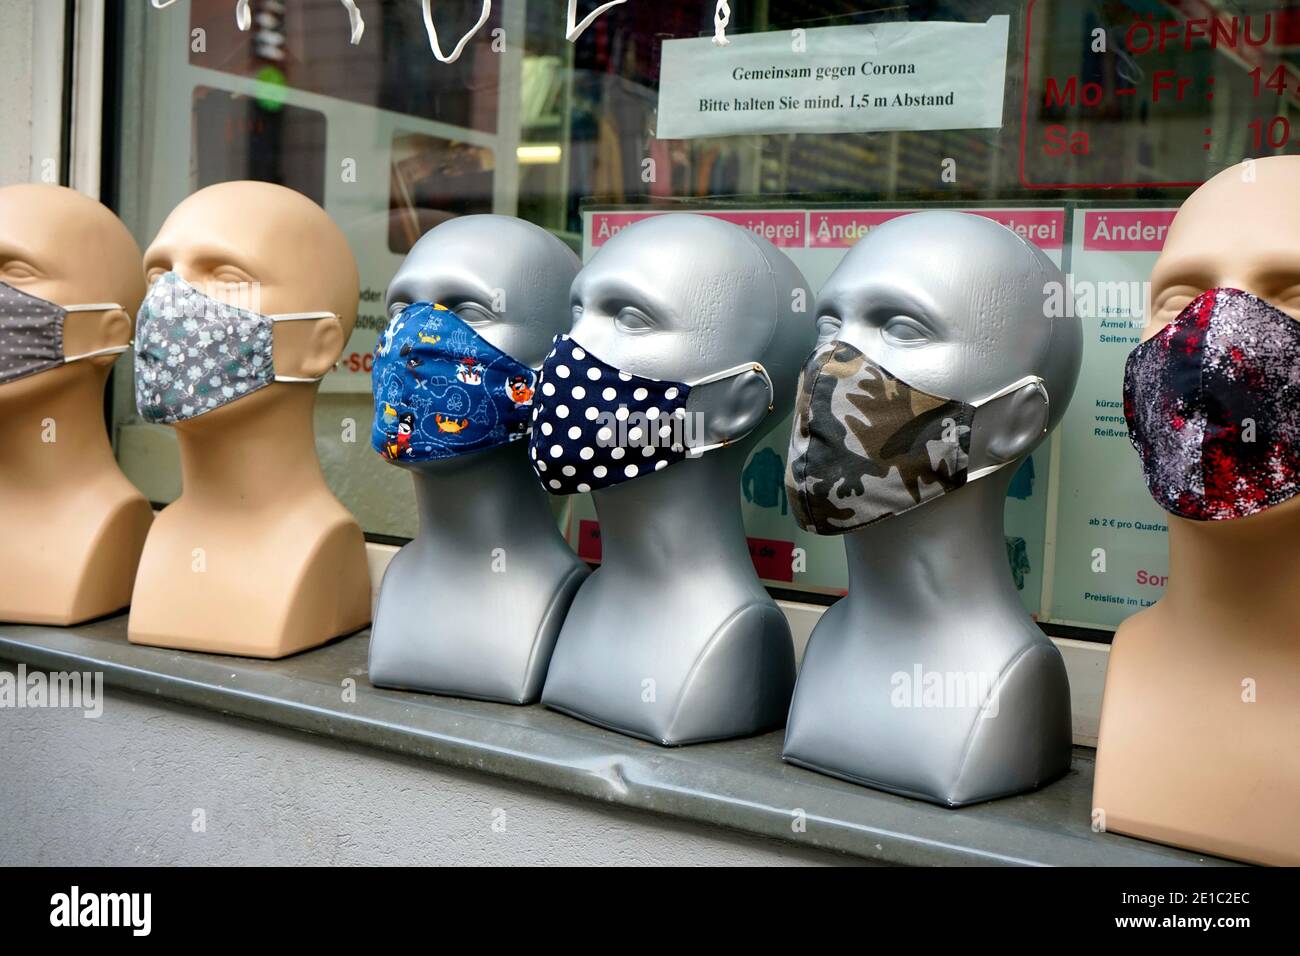 Symbolbild: Masken, Mund-Nase-Masken, Coronavirus, Covid19, Berlin (nur fuer redaktionelle Verwendung. Keine Werbung. Referenzdatenbank: http://www.3 Foto Stock